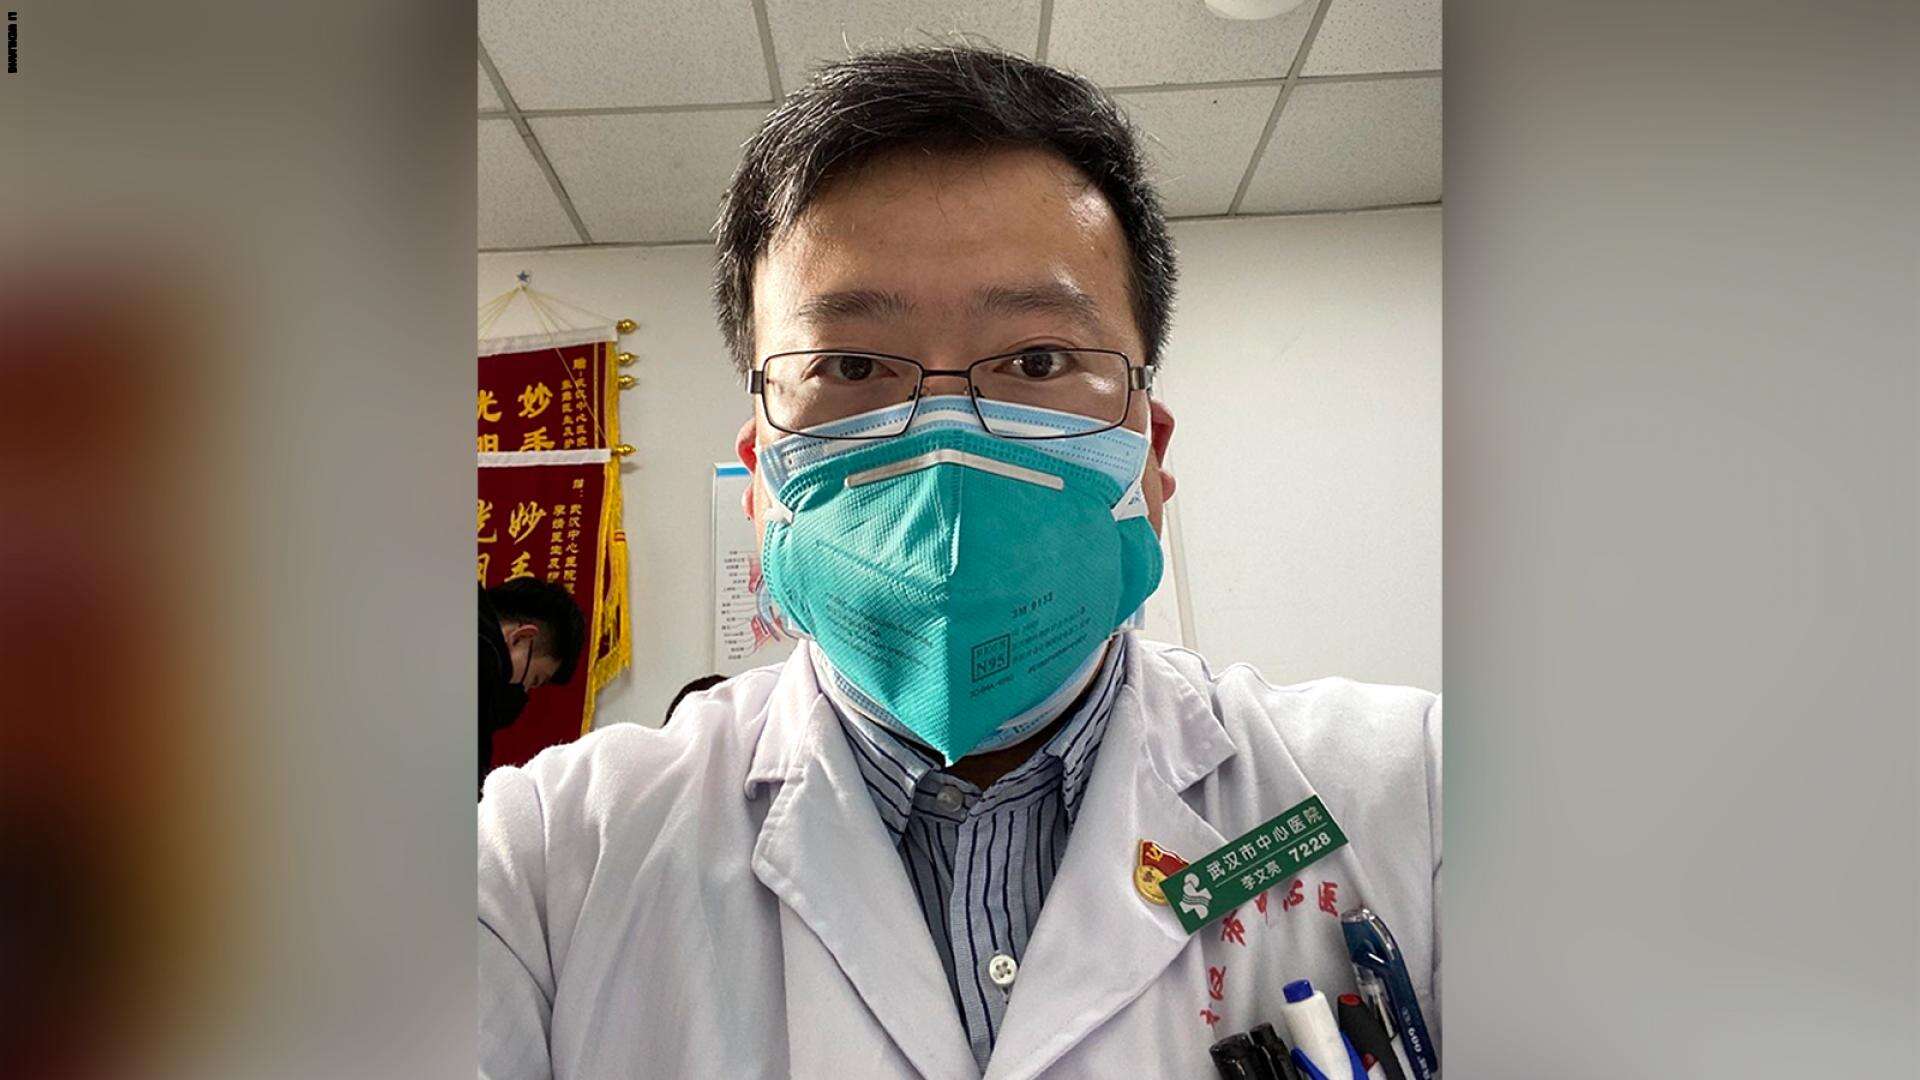 الطبيب الصيني لي وين ليانغ الذي حذر من فيروس كورونا